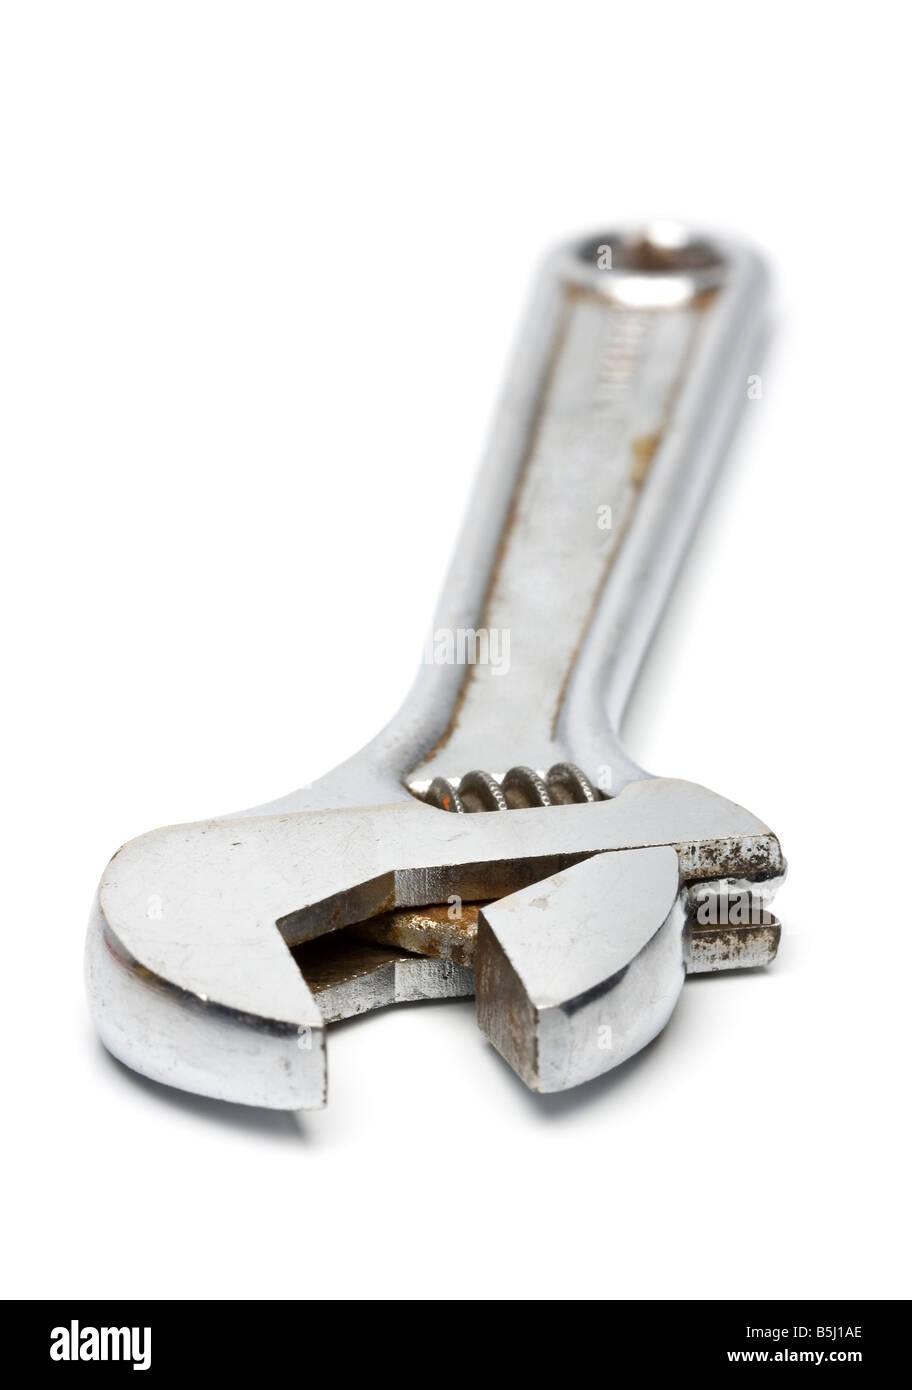 useful bricolage monkey wrench tool isolated on white bakcground Stock Photo